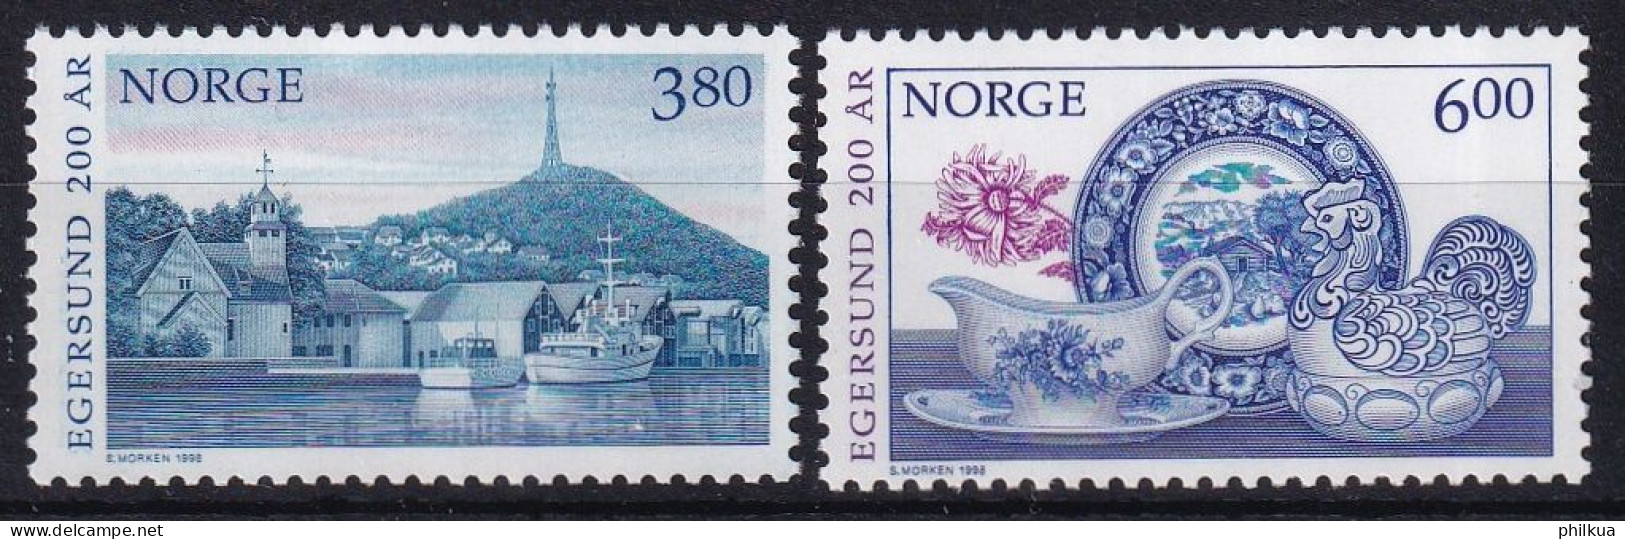 MiNr. 1278 - 1279 Norwegen       1998, 20. April. 200 Jahre Stadt Egersund - Postfrisch/**/MNH - Unused Stamps